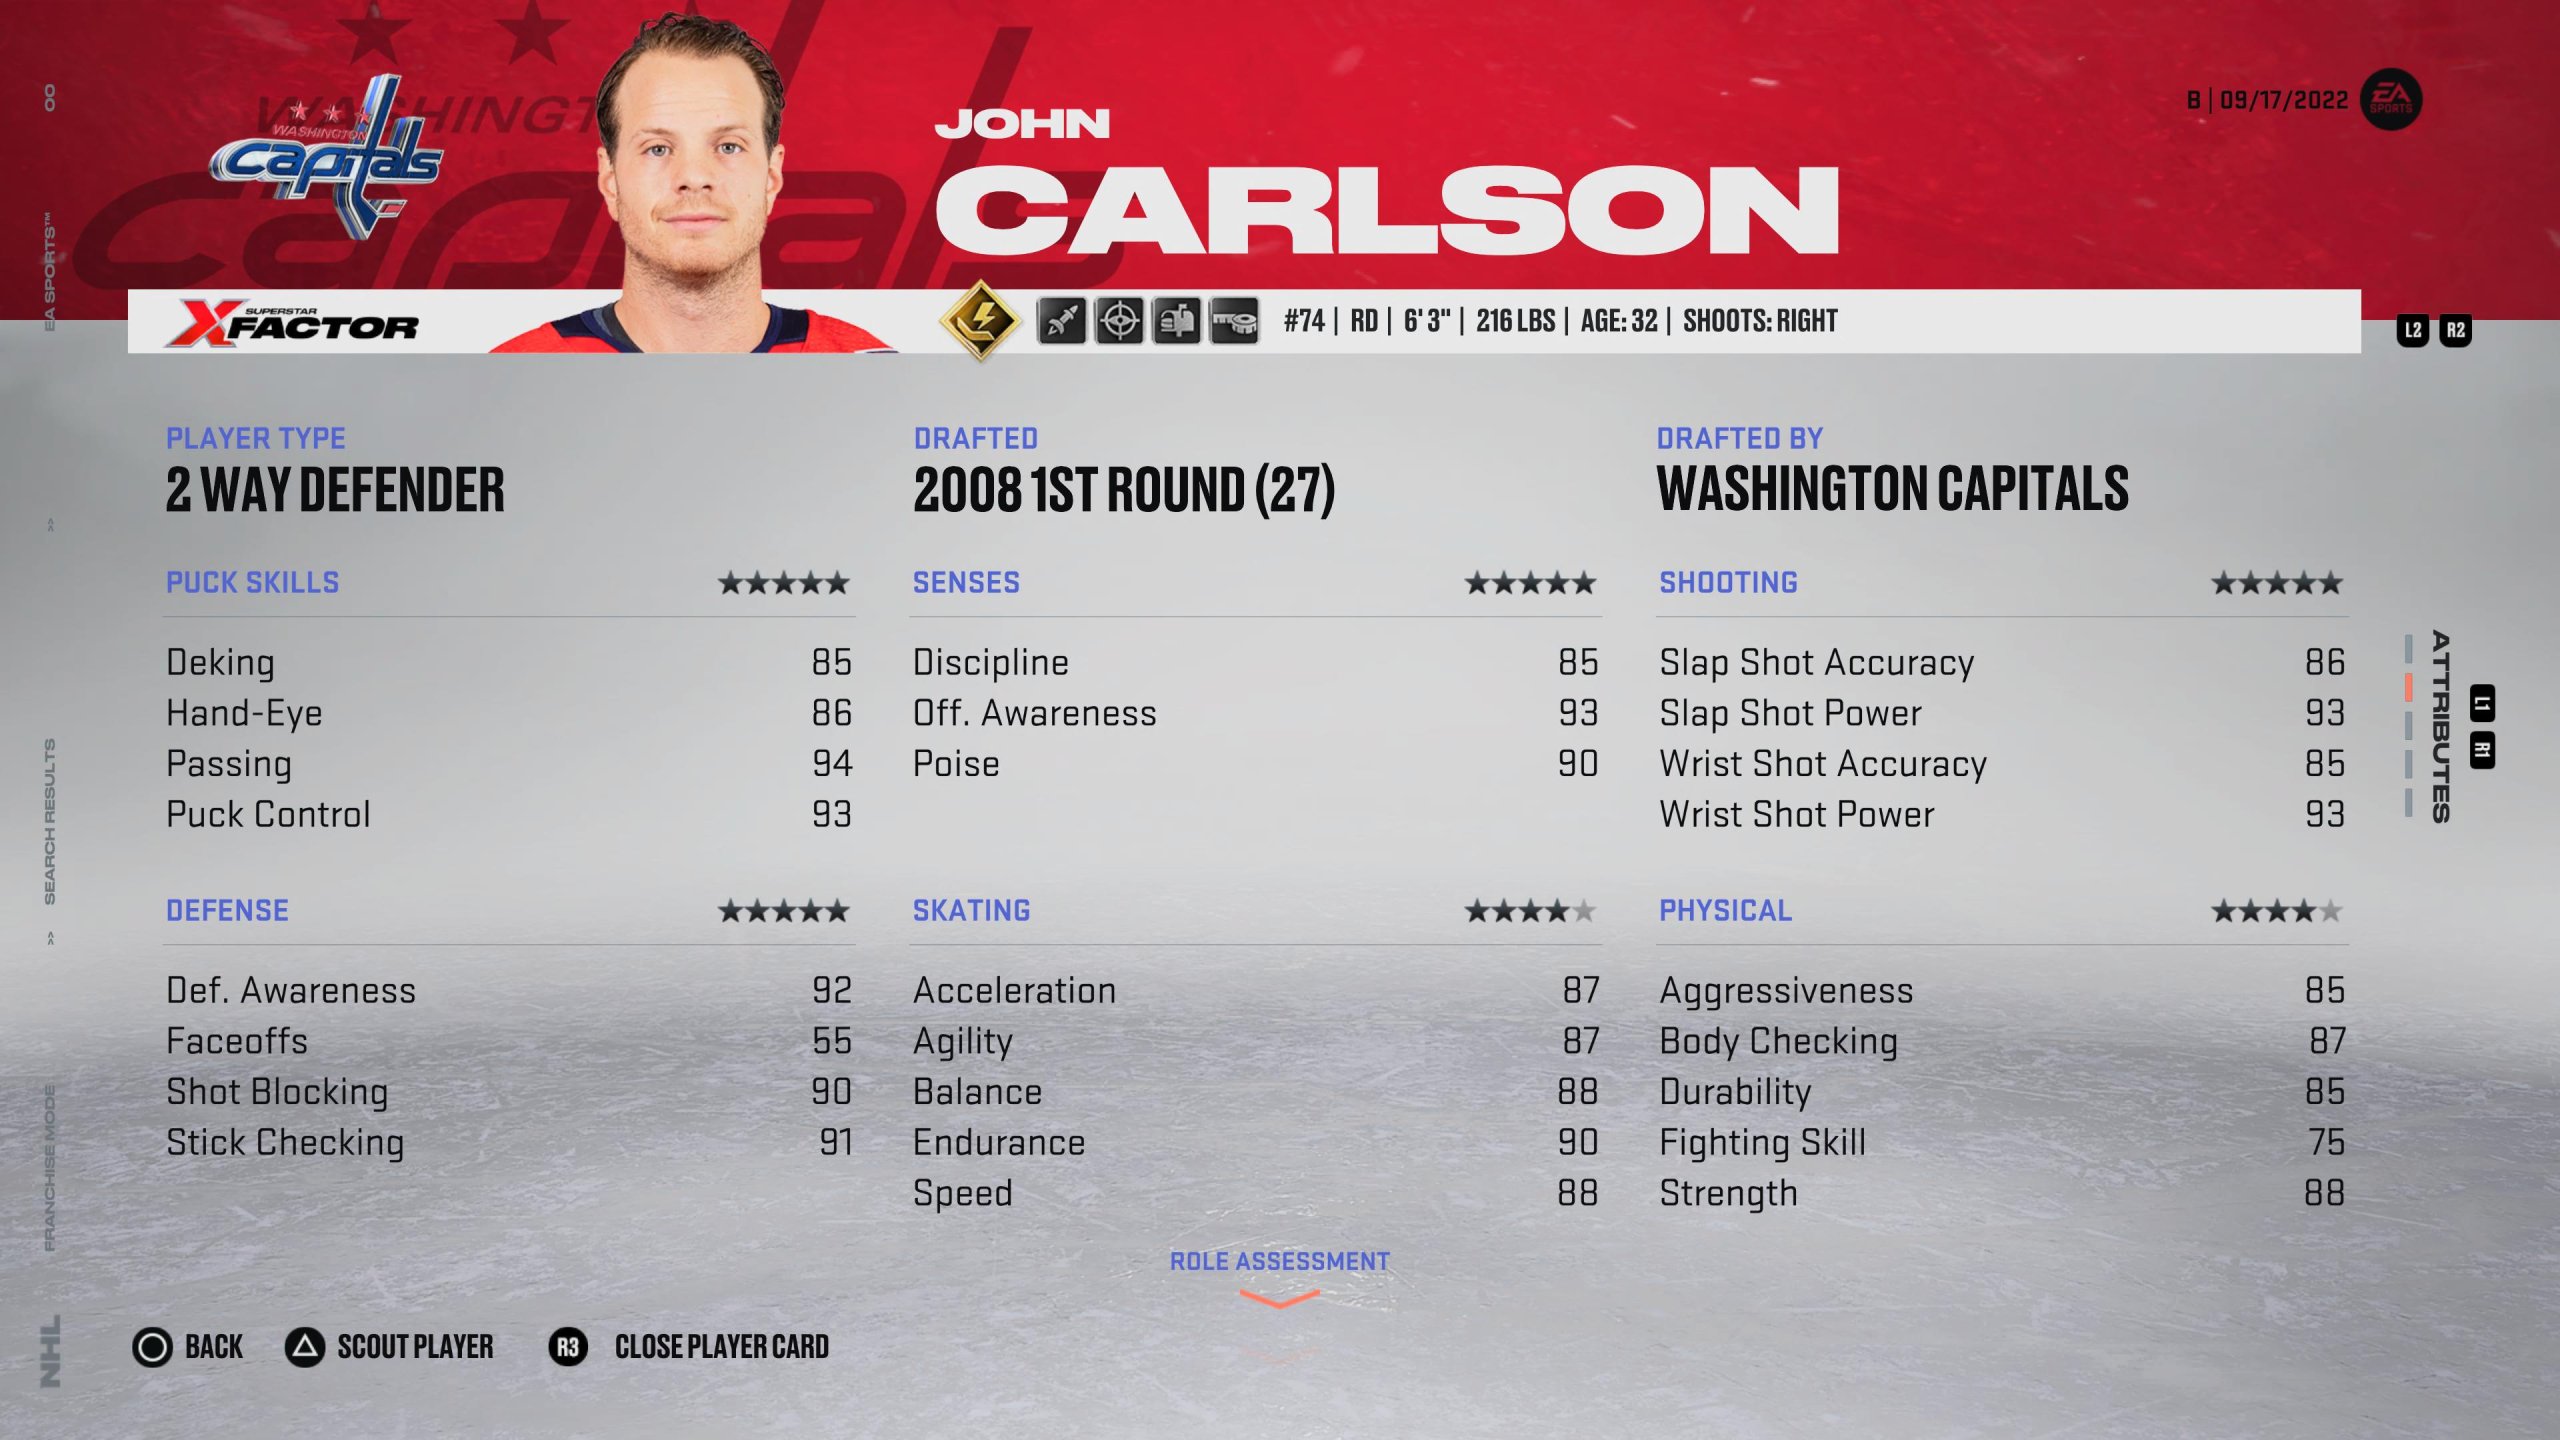 ジョン・カールソン - NHL 23 で最高のディフェンスの 1 人